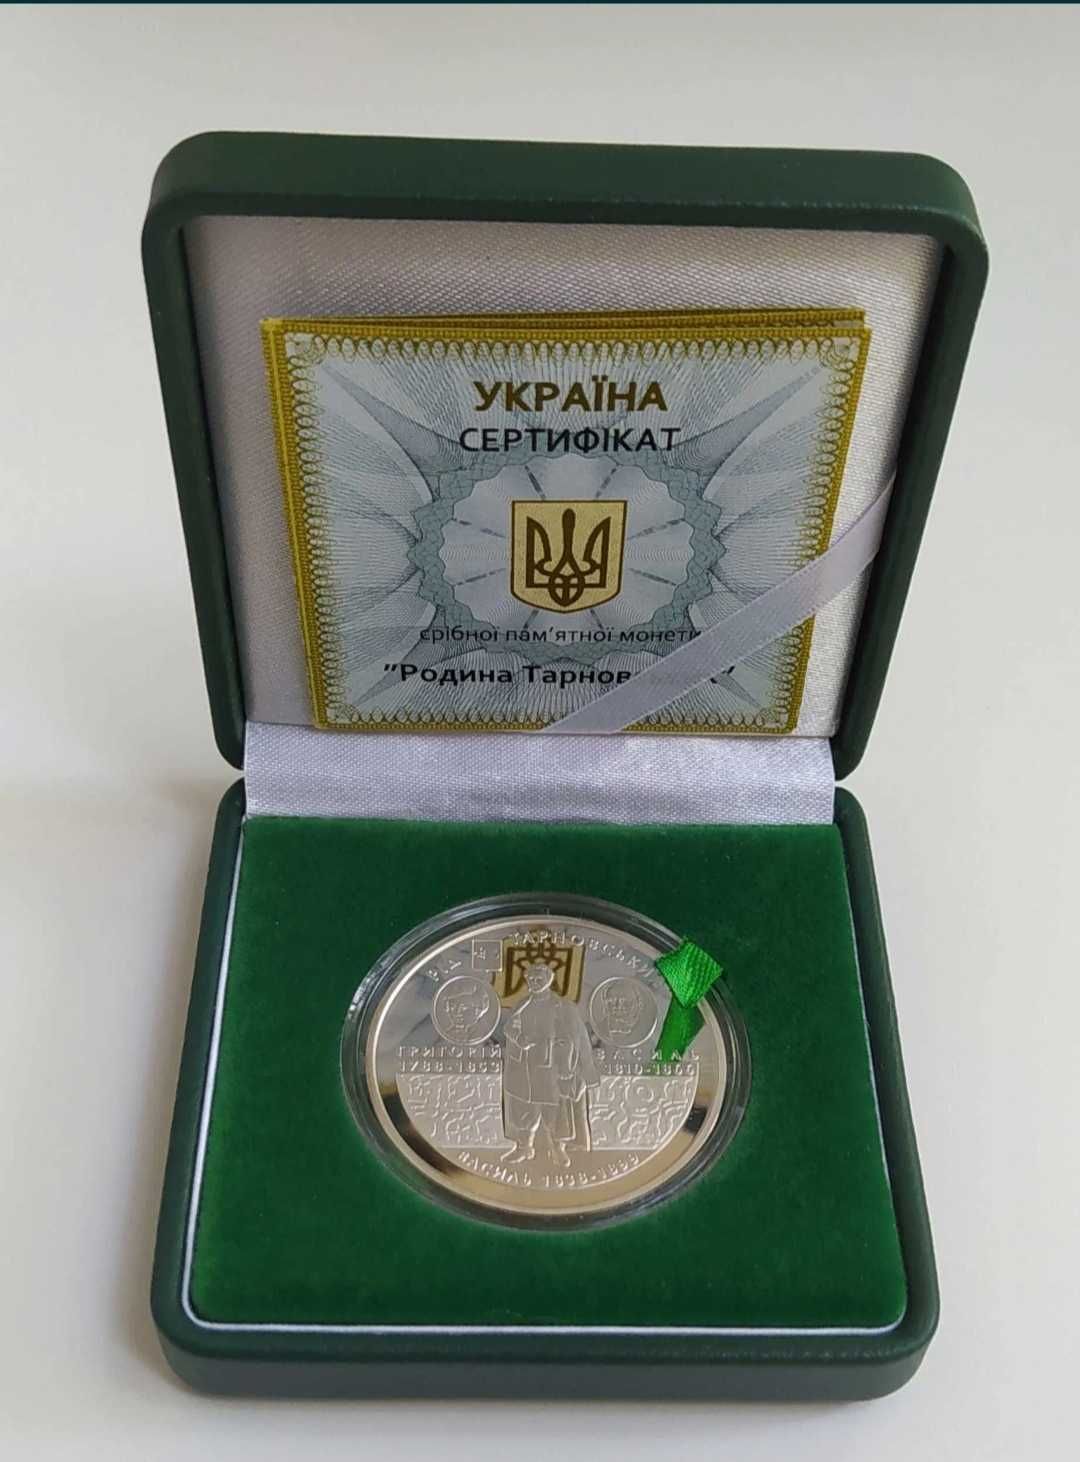 Срібна монета "Родина Тарновських" у футлярі